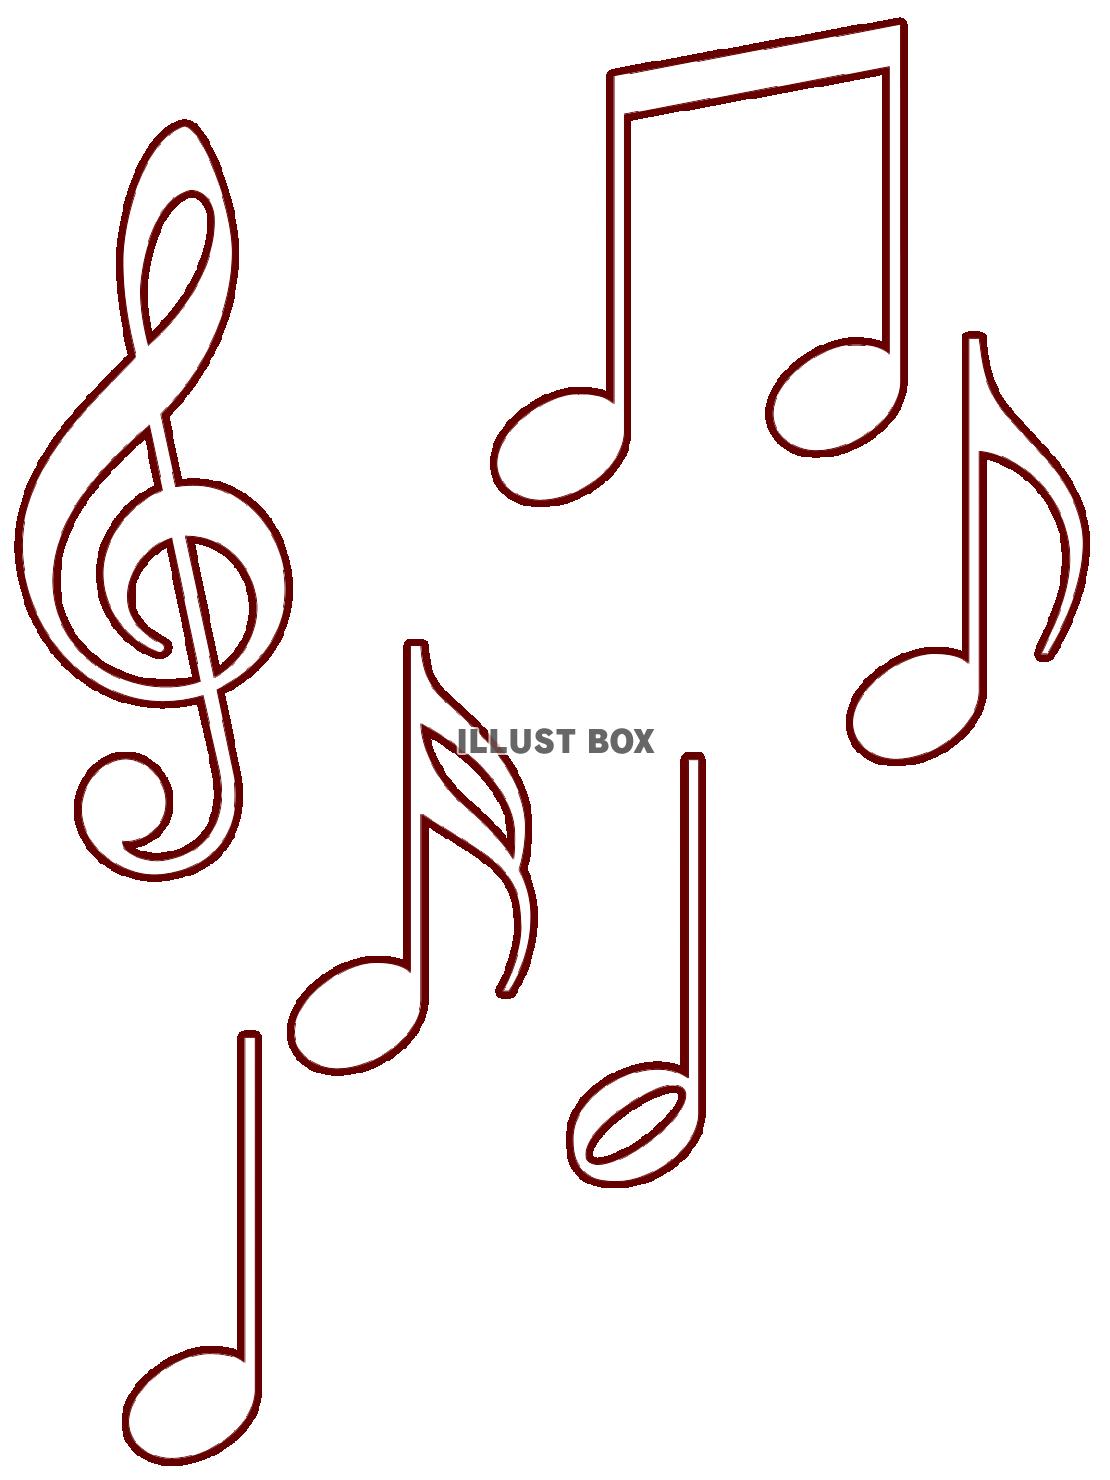 ト音記号と音符の壁紙画像シンプル背景素材イラスト透過png